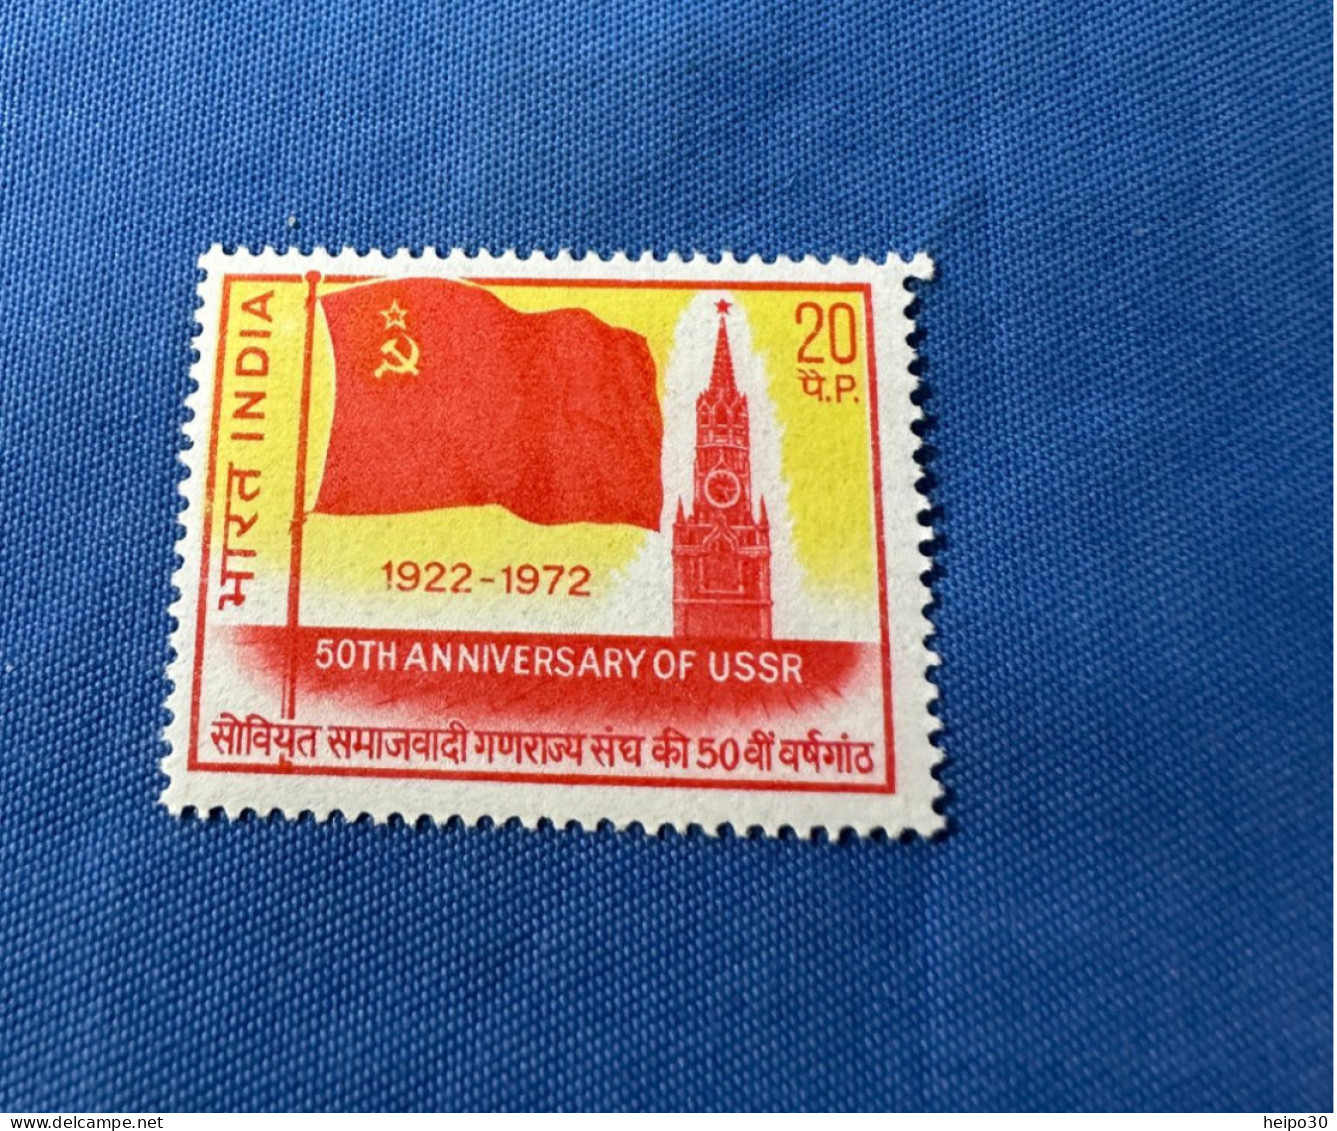 India 1972 Michel 551 UdSSR 50 Jahre MNH - Ungebraucht